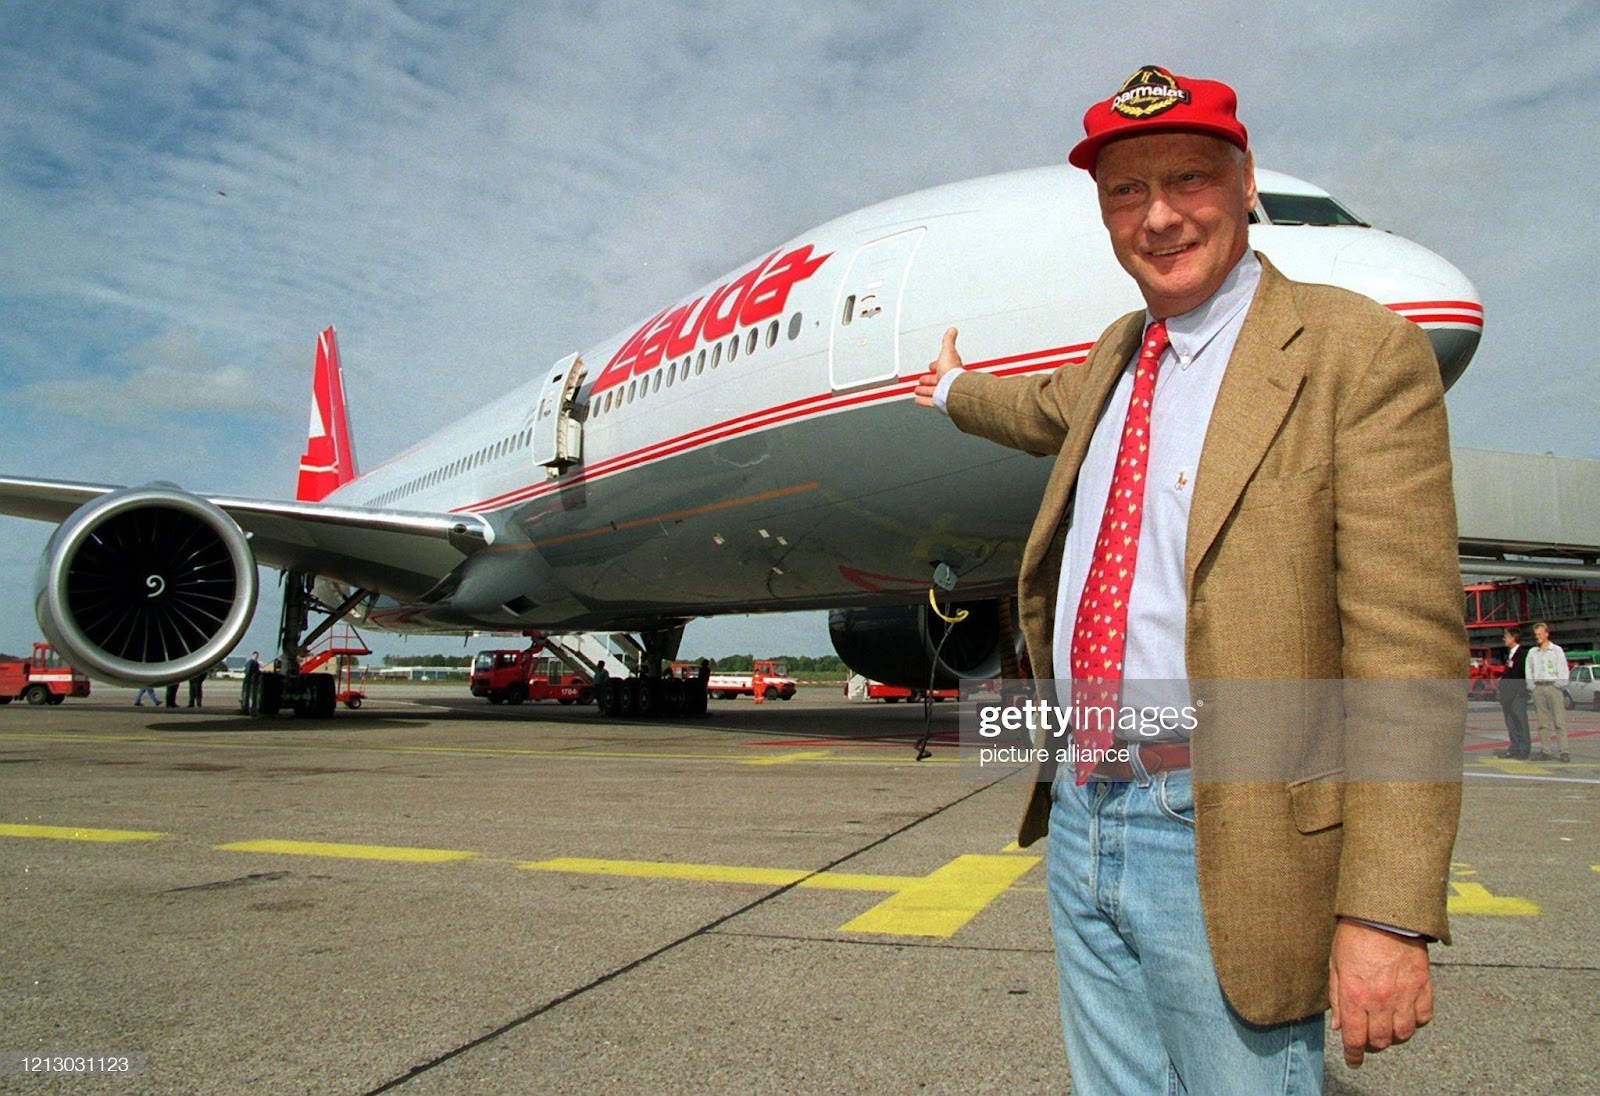 Niki Lauda next to an airplane